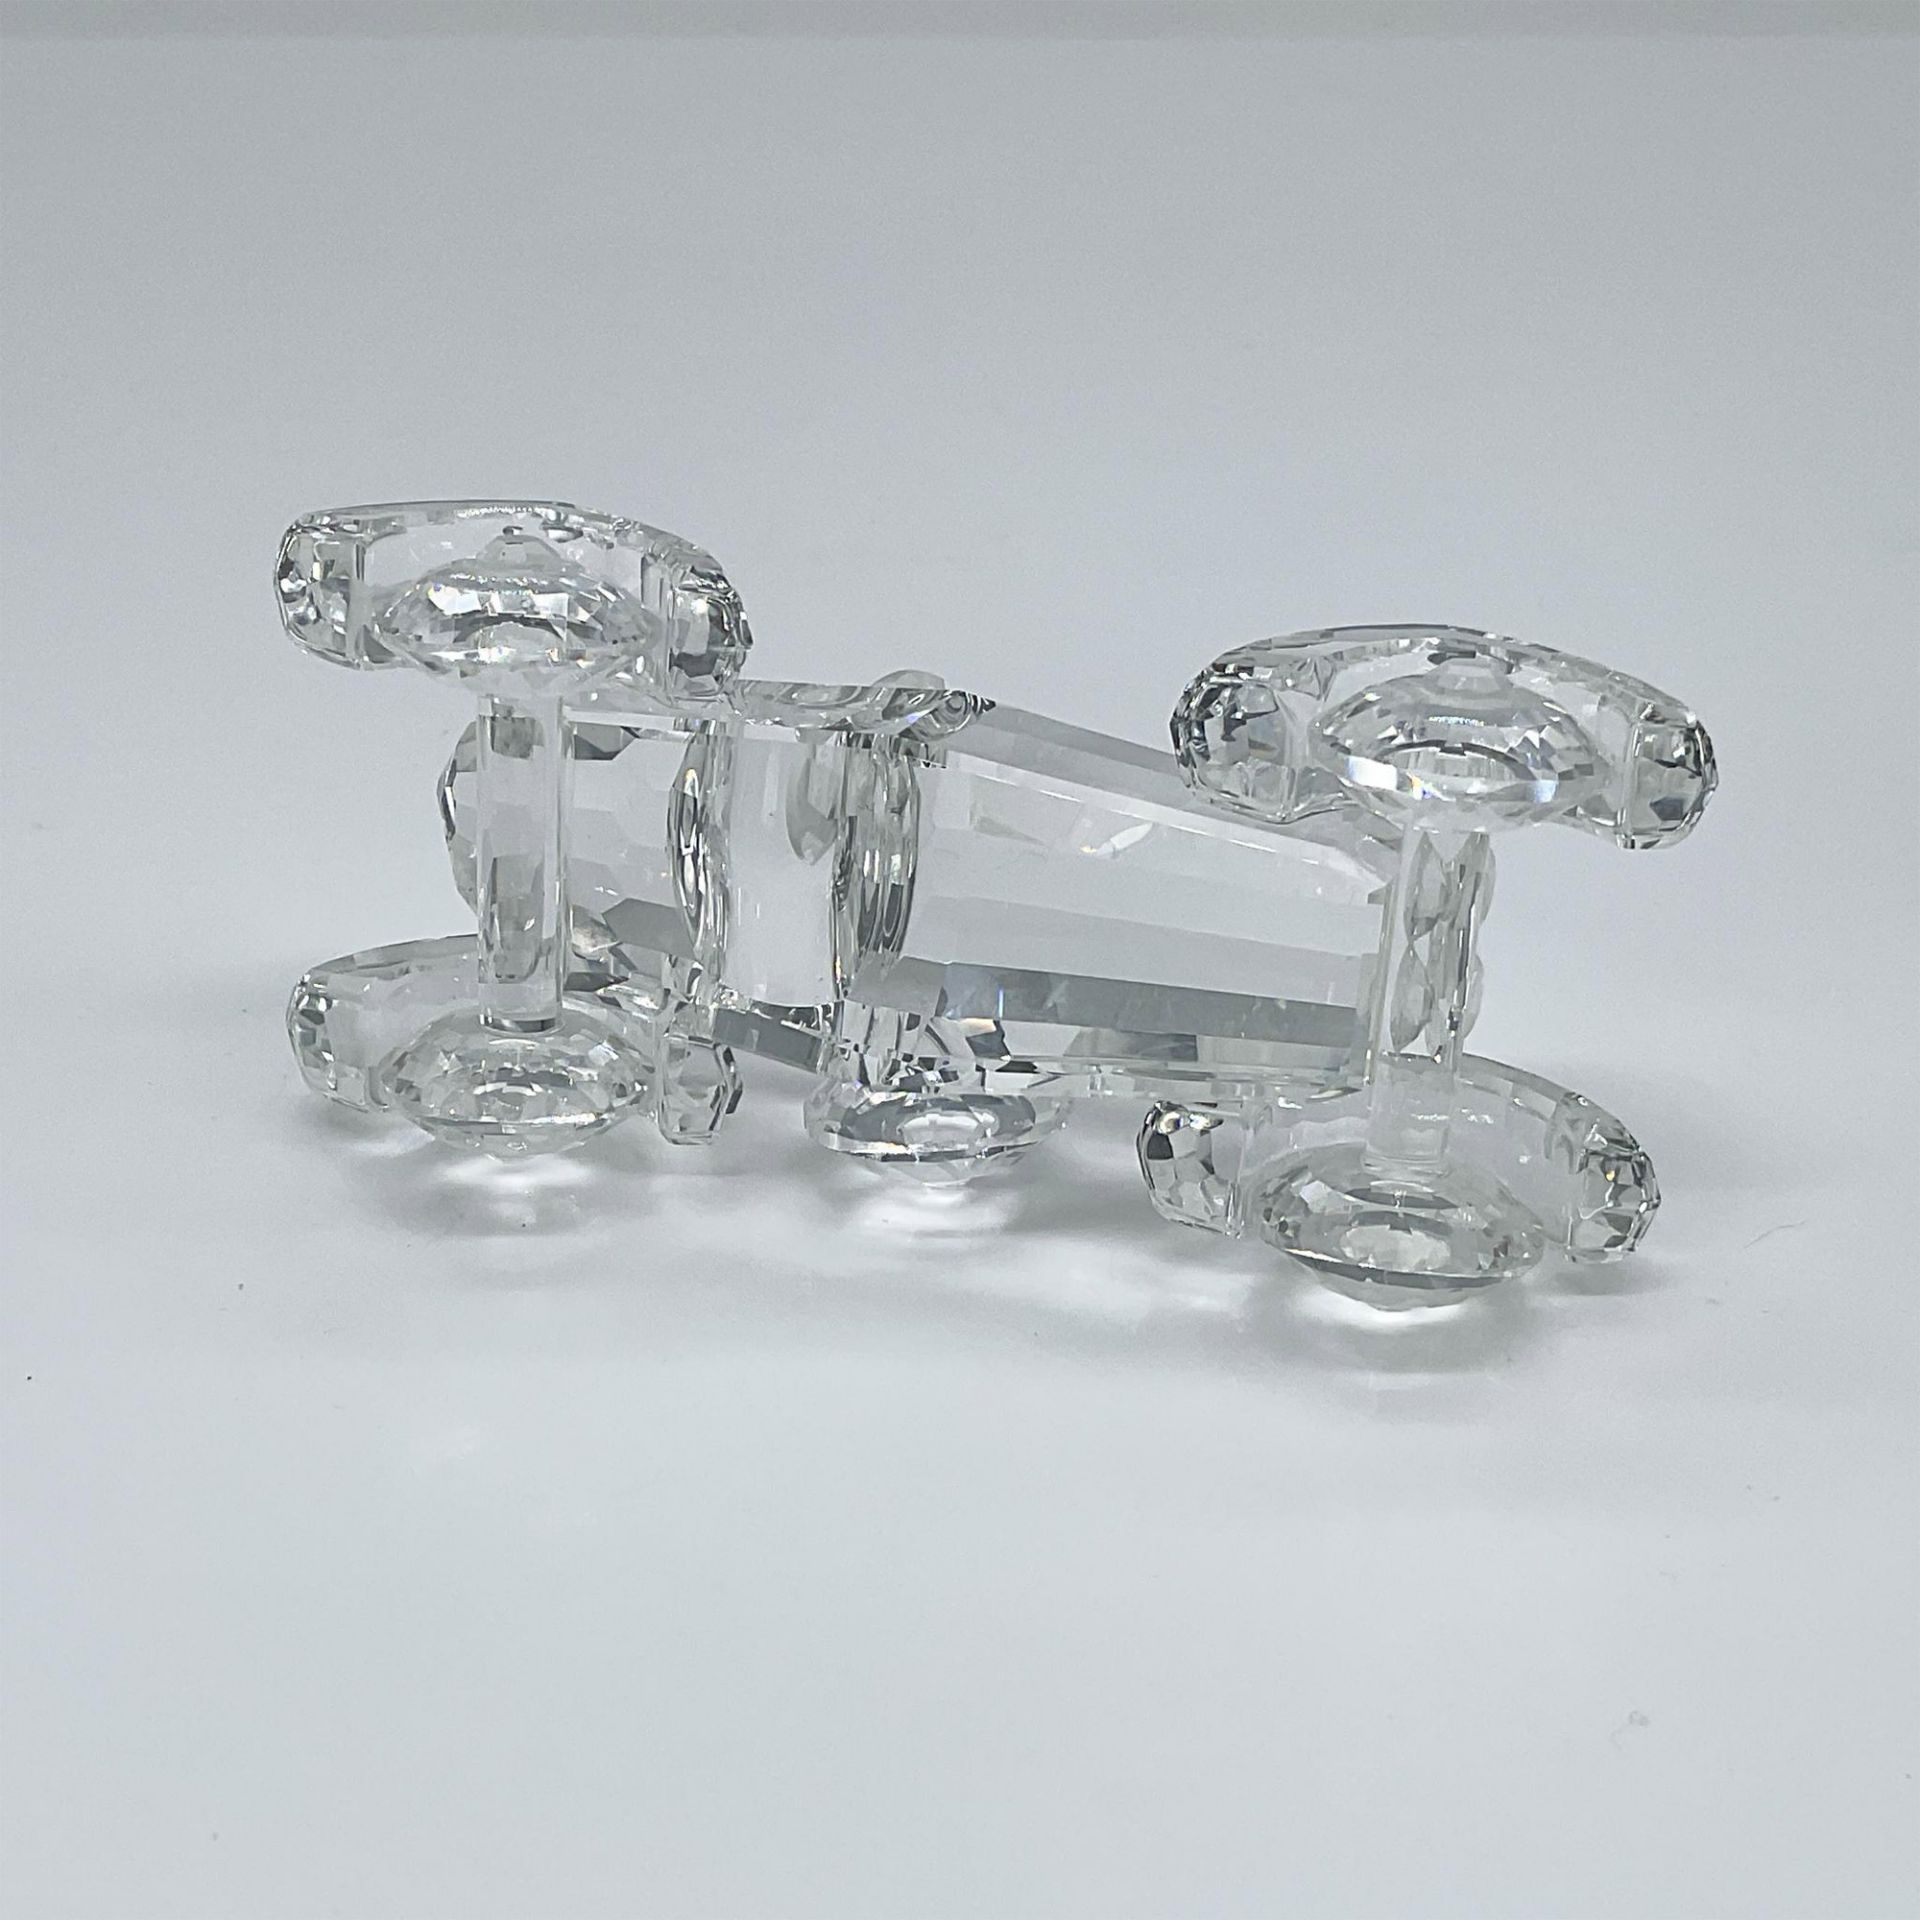 Swarovski Crystal Figurine, Old Timer Car - Image 3 of 3